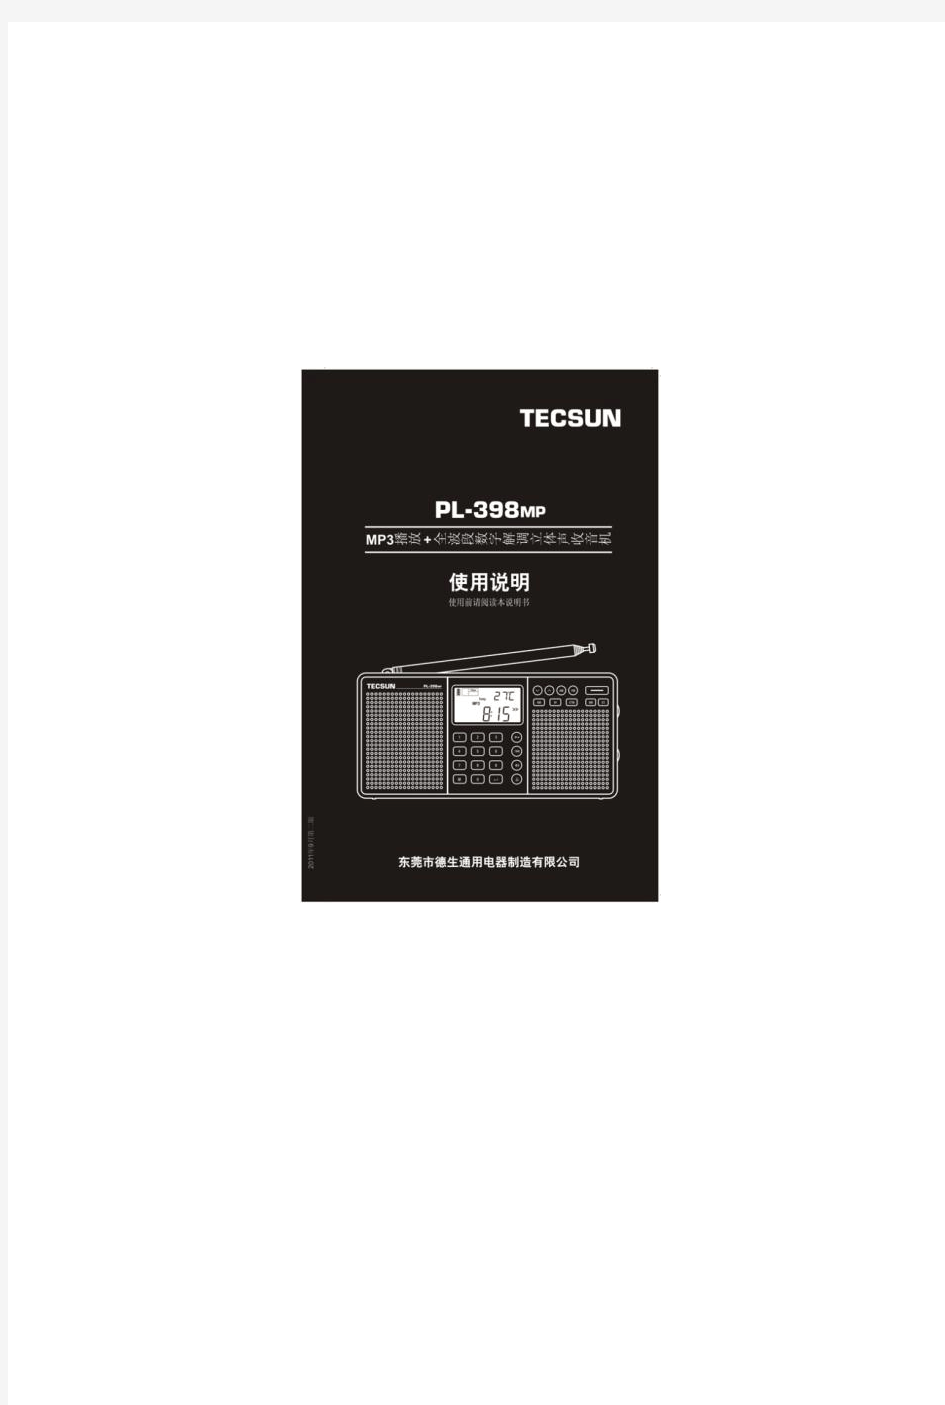 德生收音机TECSUN PL-398MP使用说明书